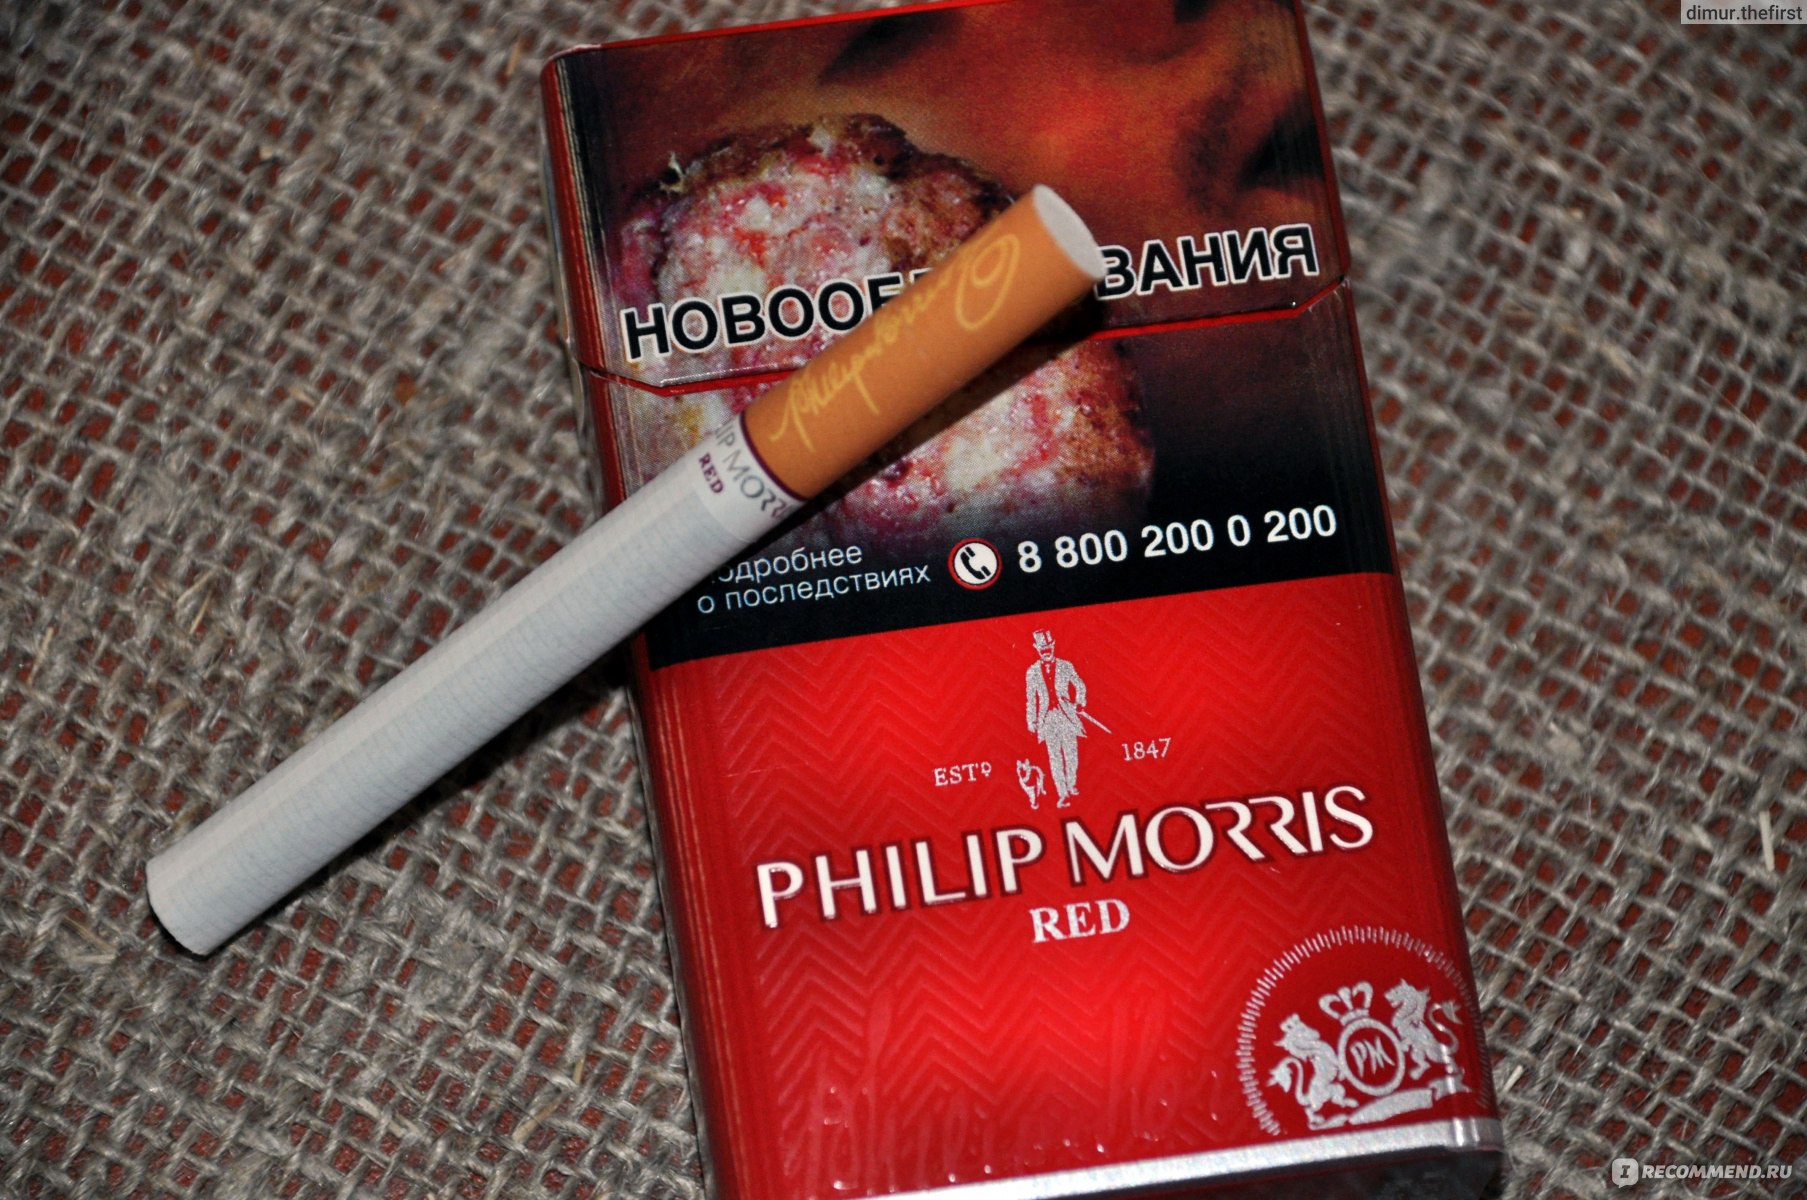 Сигареты филип моррис с кнопкой цена. Сигареты Филип Моррис красный. Сигареты красни флип Морес. Сигареты Филип Морис с красной кнопкой. Сигареты пилпморс красный.